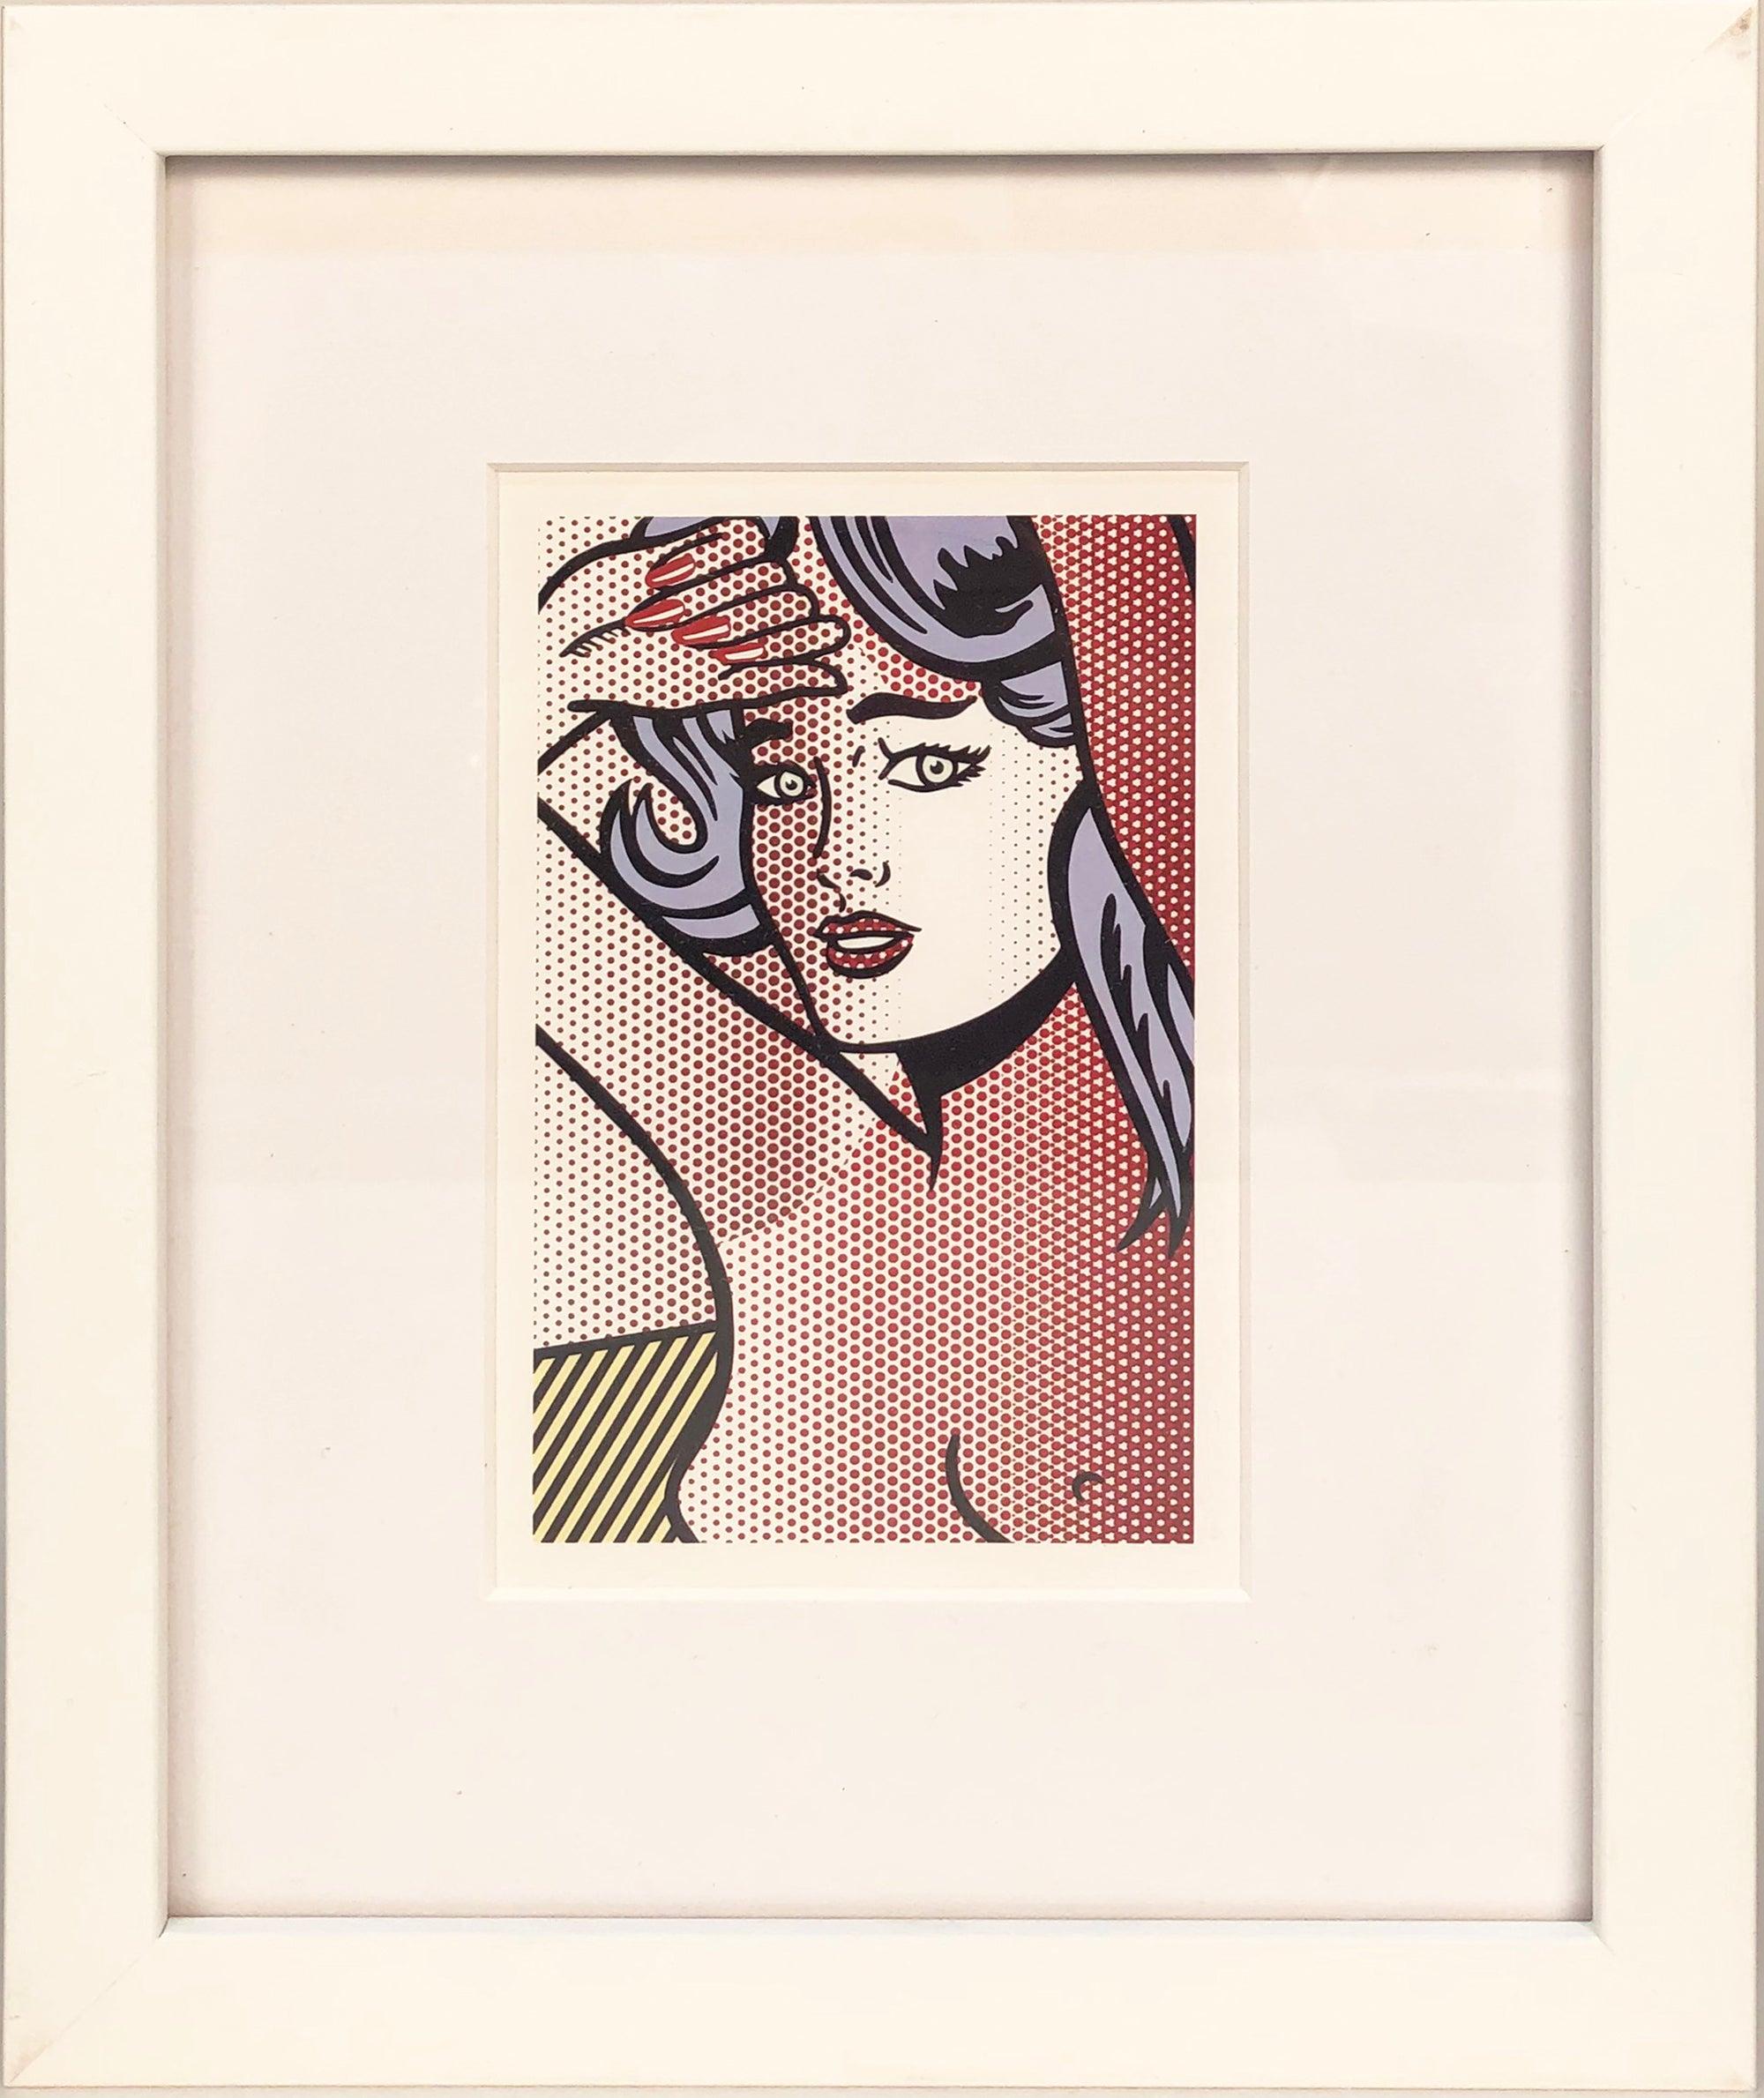 1997 Roy Lichtenstein 'Nude with Blue Hair' Invitation encadrée - Print de (after) Roy Lichtenstein